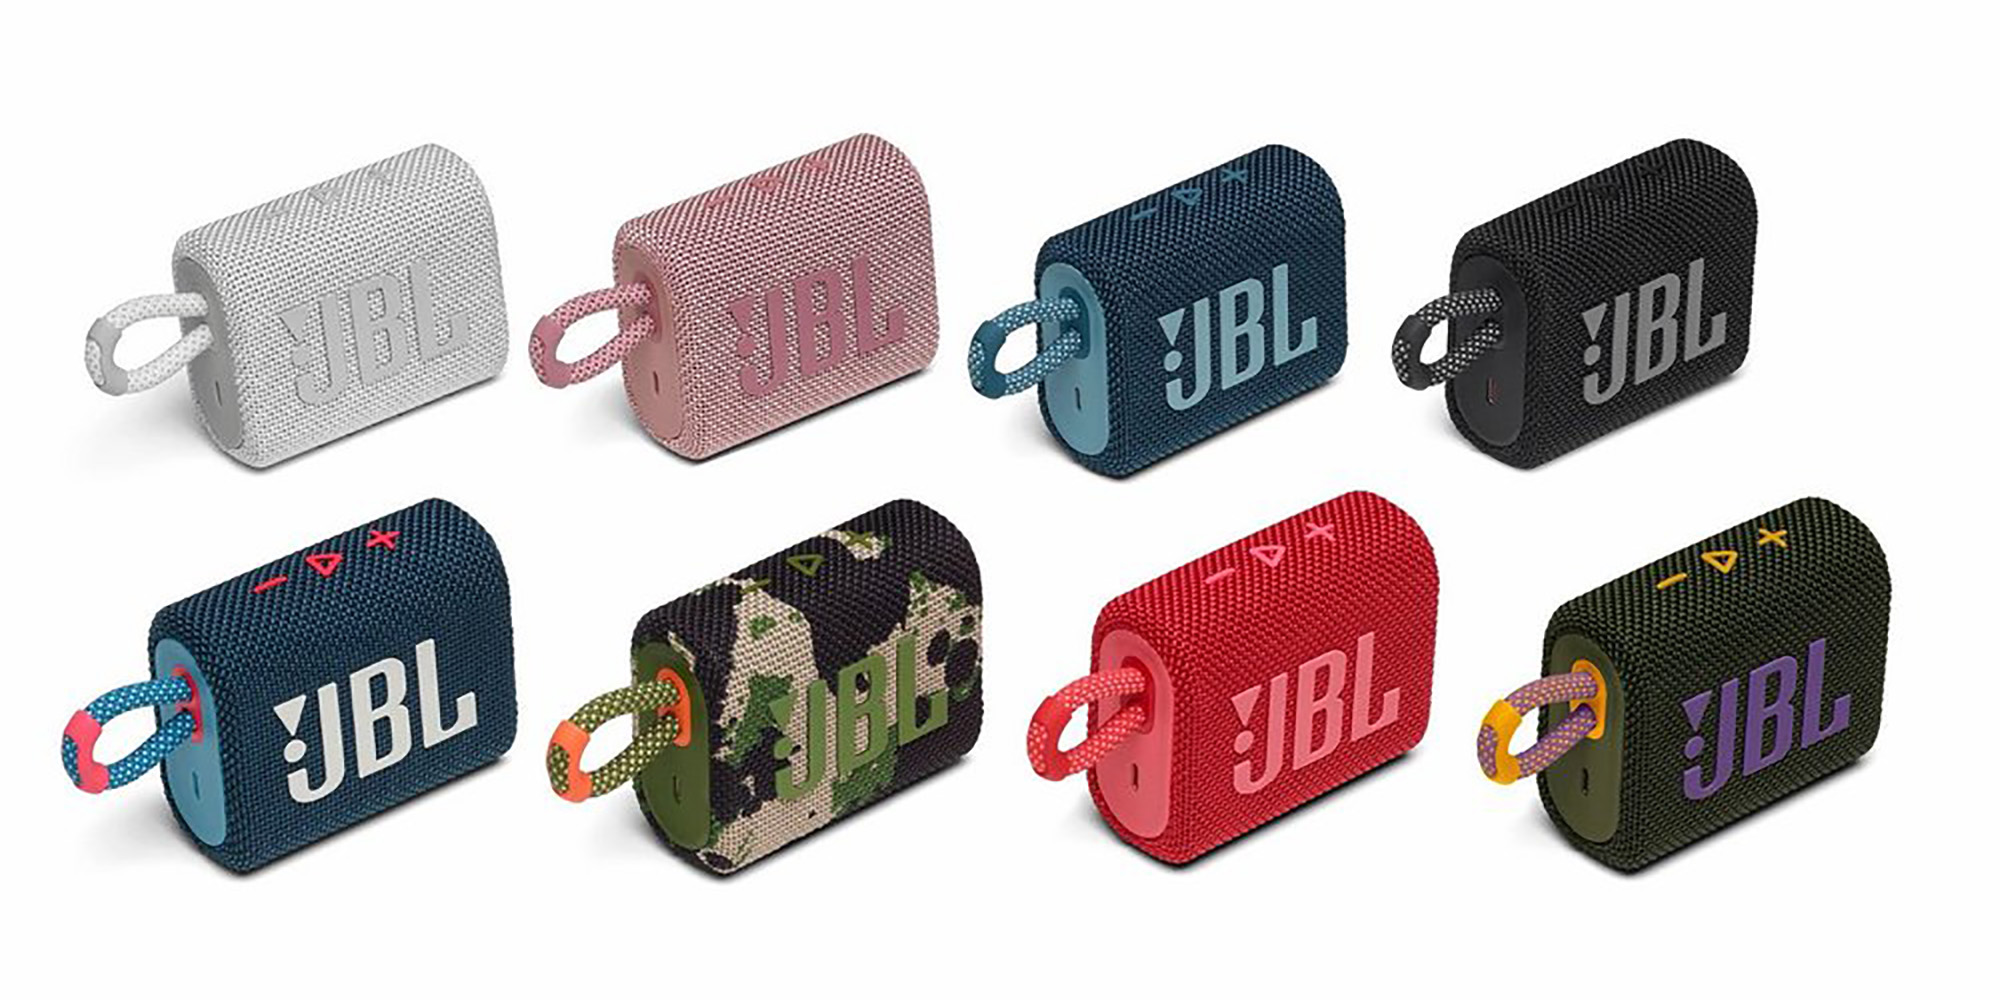 JBL Go 3: Altavoz portátil con Bluetooth, batería integrada, Resistente al  Agua y al Polvo - Verde Azulado JBL GO 3